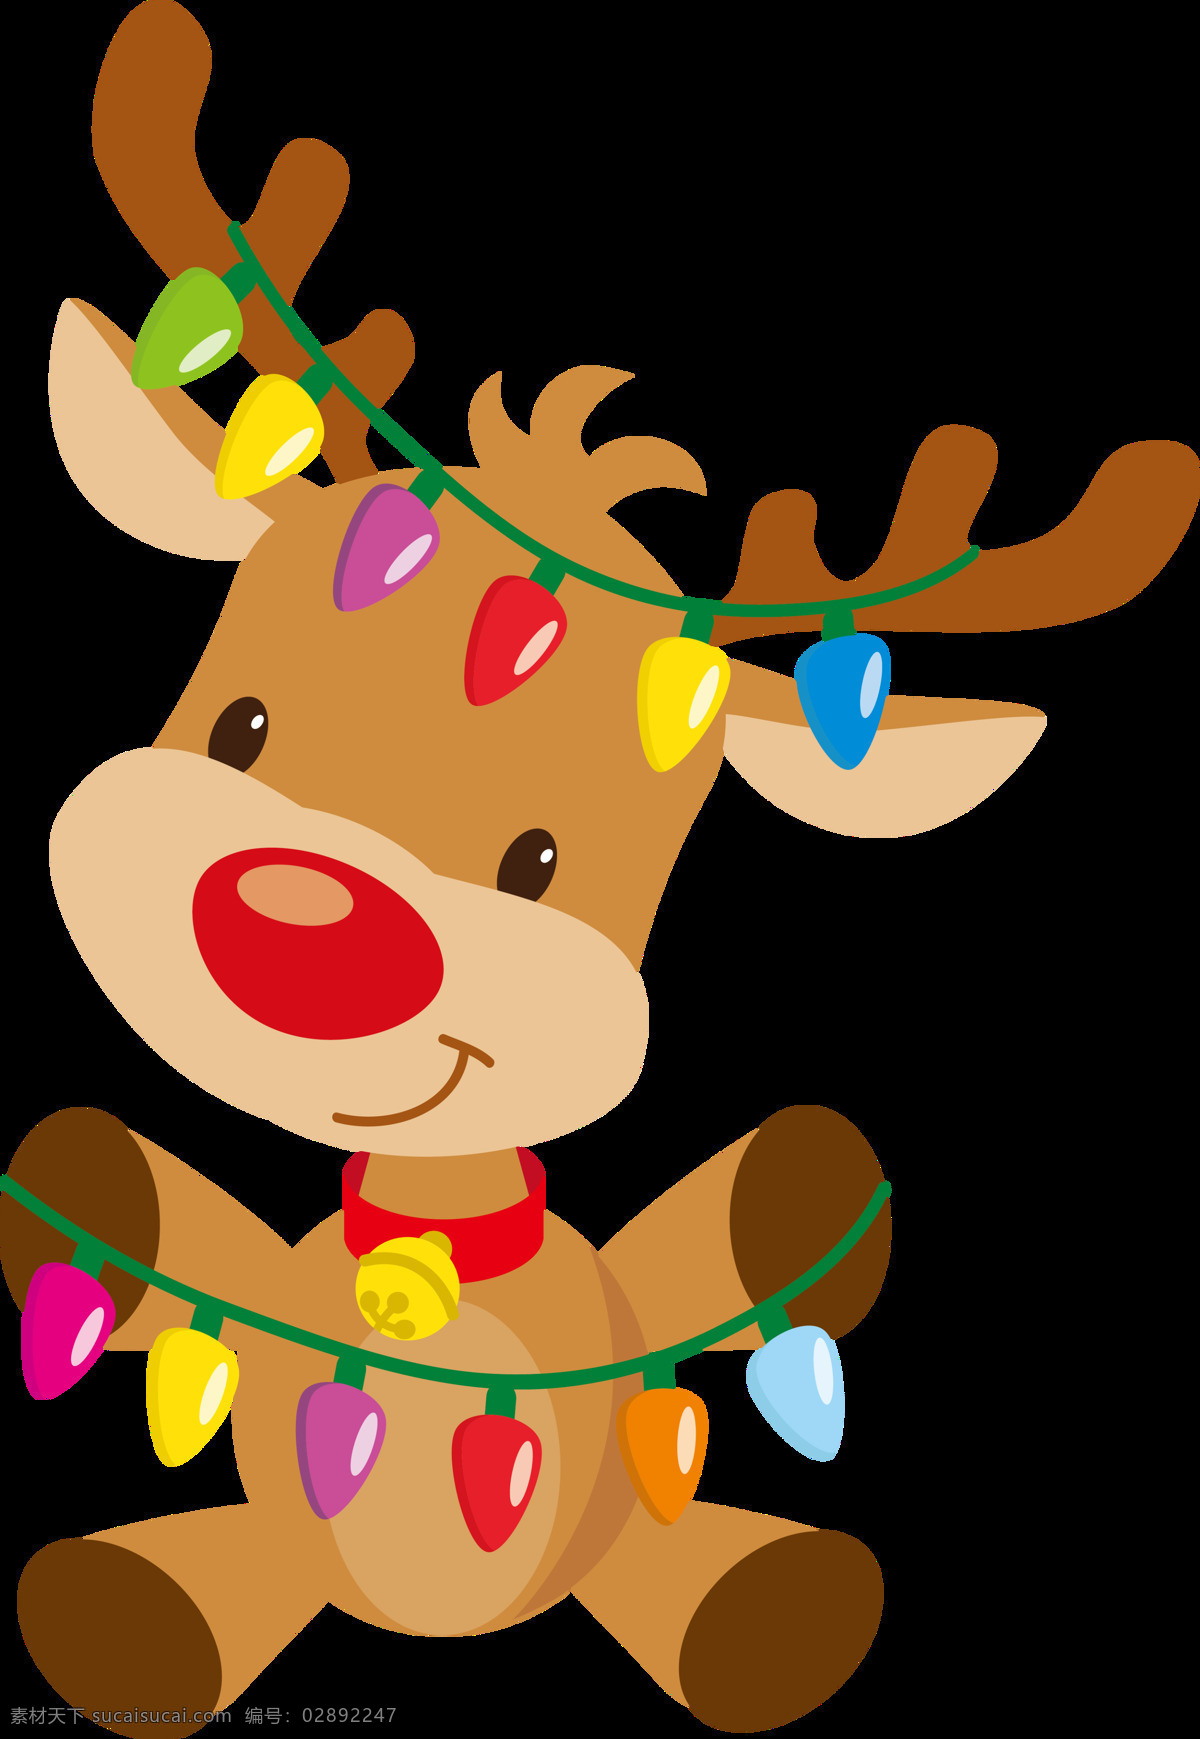 意趣 圣诞 麋鹿 元素 2018圣诞 彩灯 节日元素 卡通麋鹿 圣诞png 圣诞节 圣诞节快乐 圣诞麋鹿 圣诞免抠元素 圣诞装扮 圣诞装饰